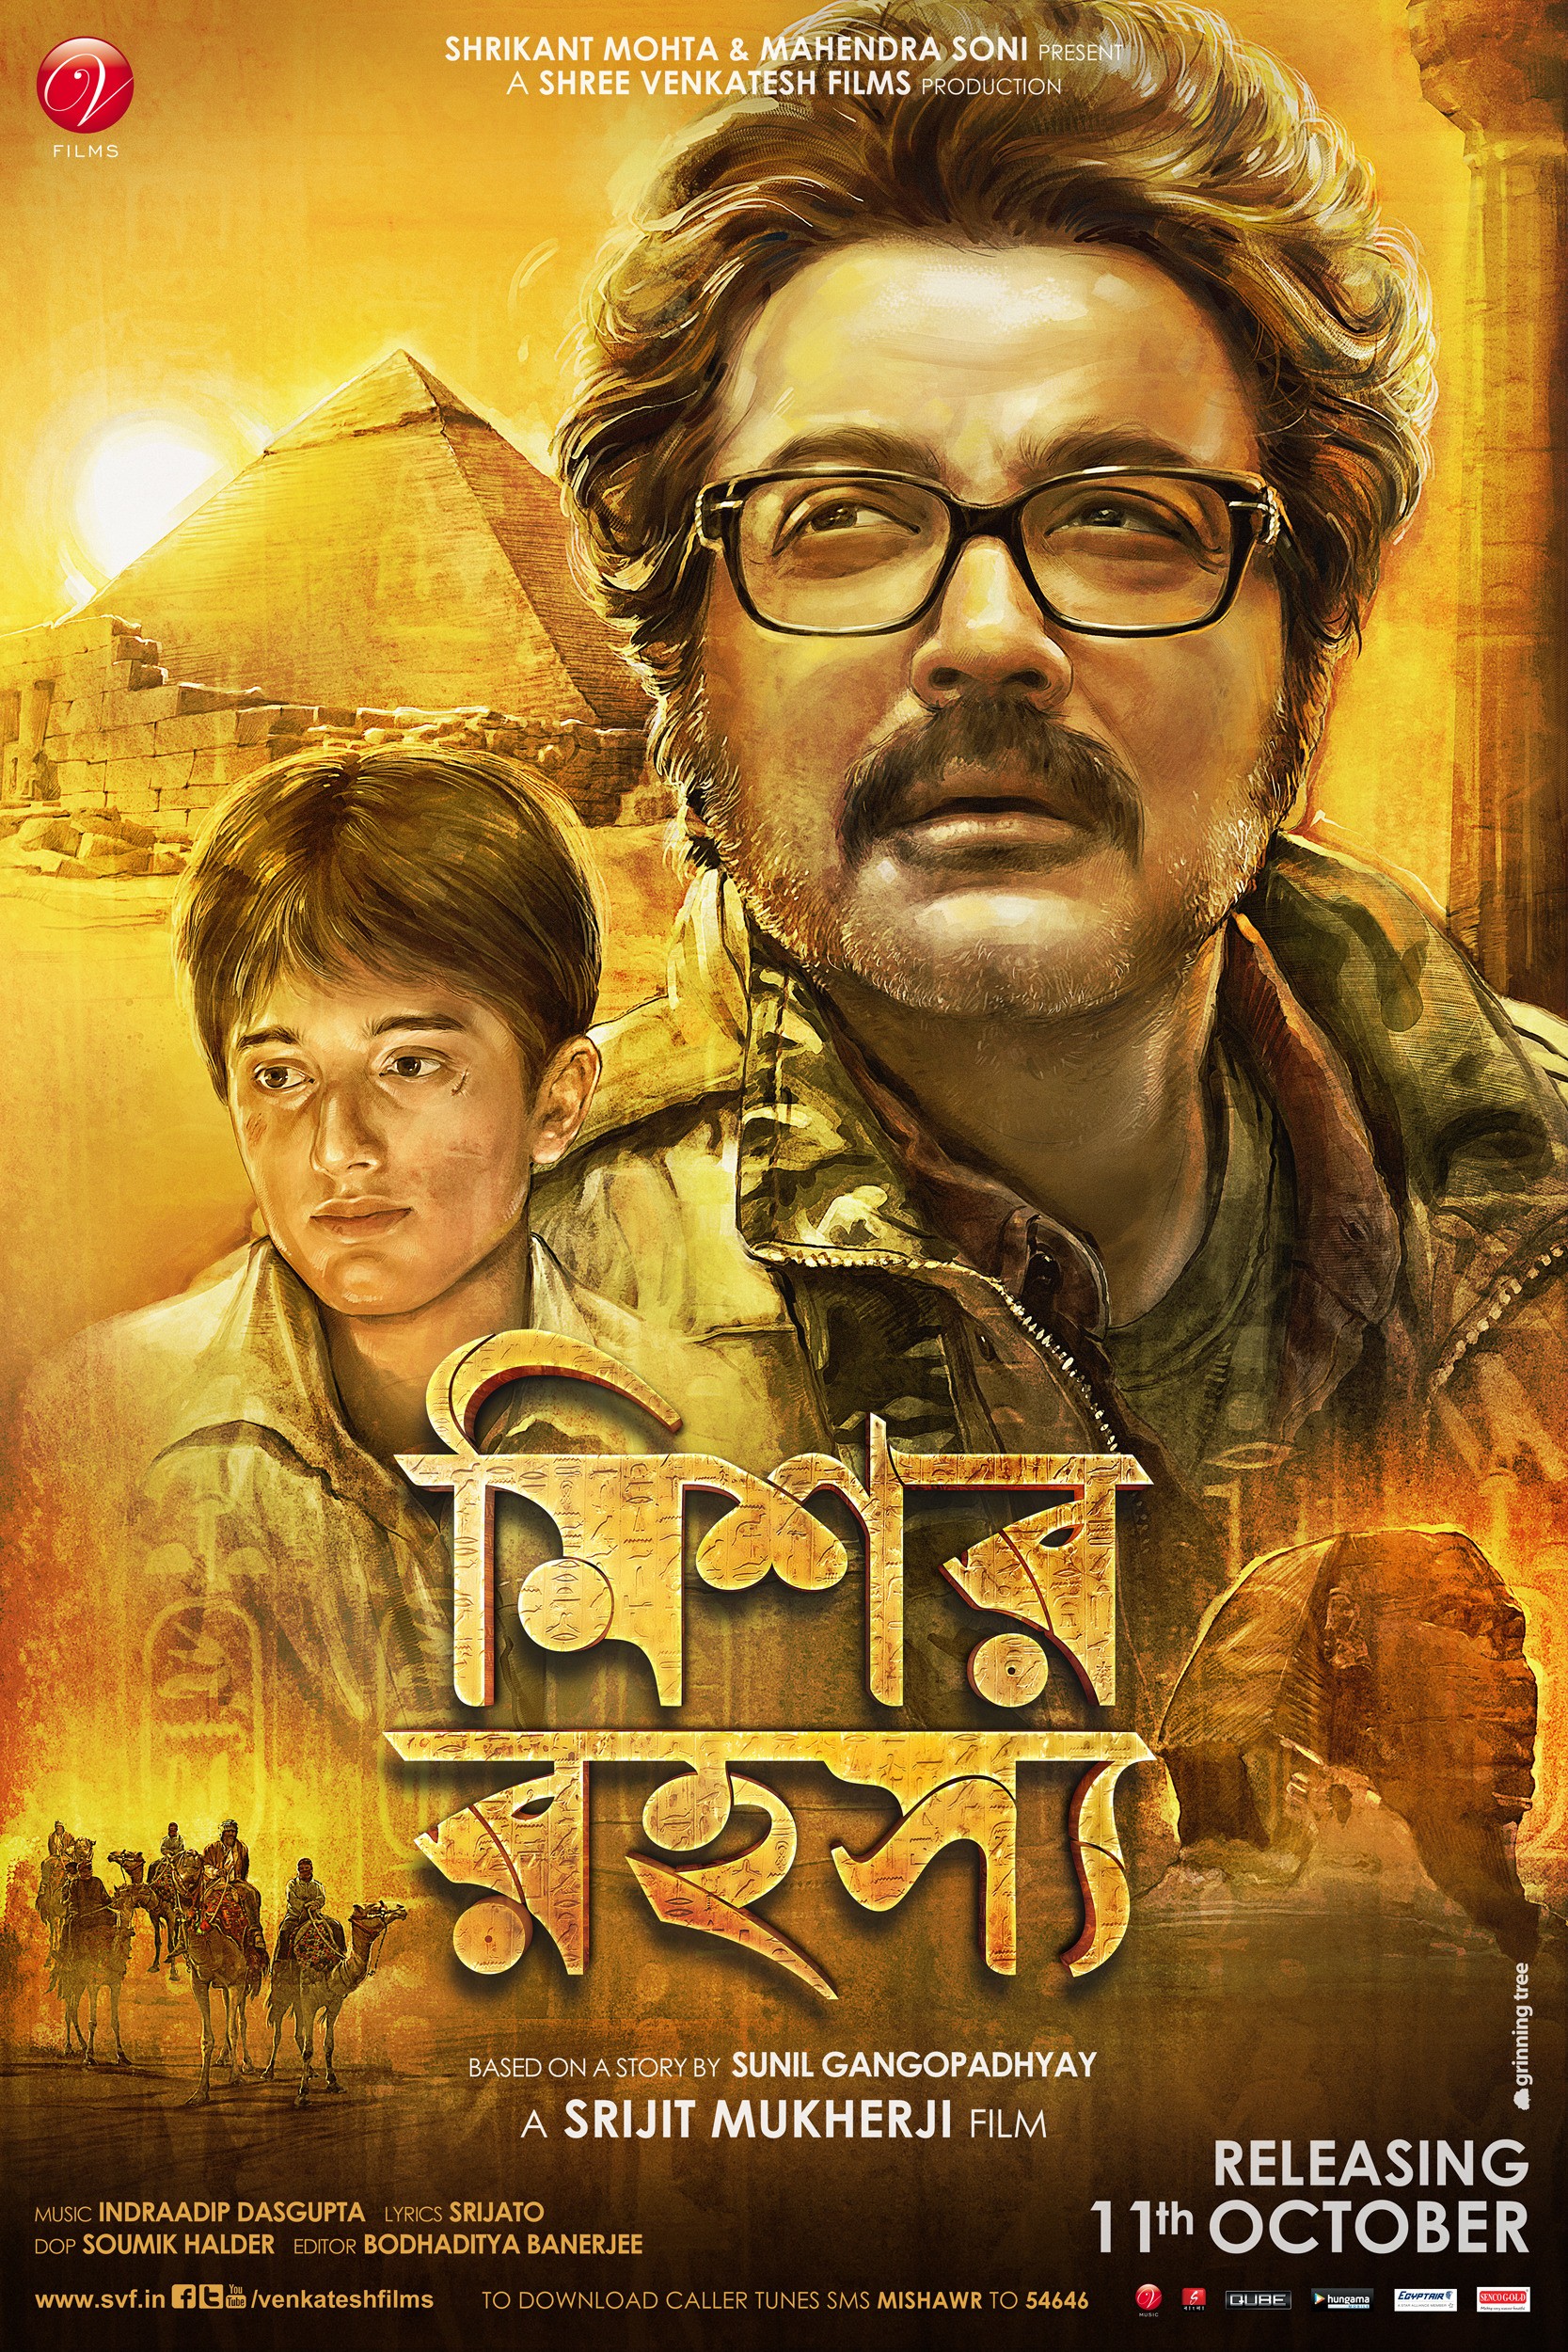 Mega Sized Movie Poster Image for Mishawr Rawhoshyo (#2 of 6)